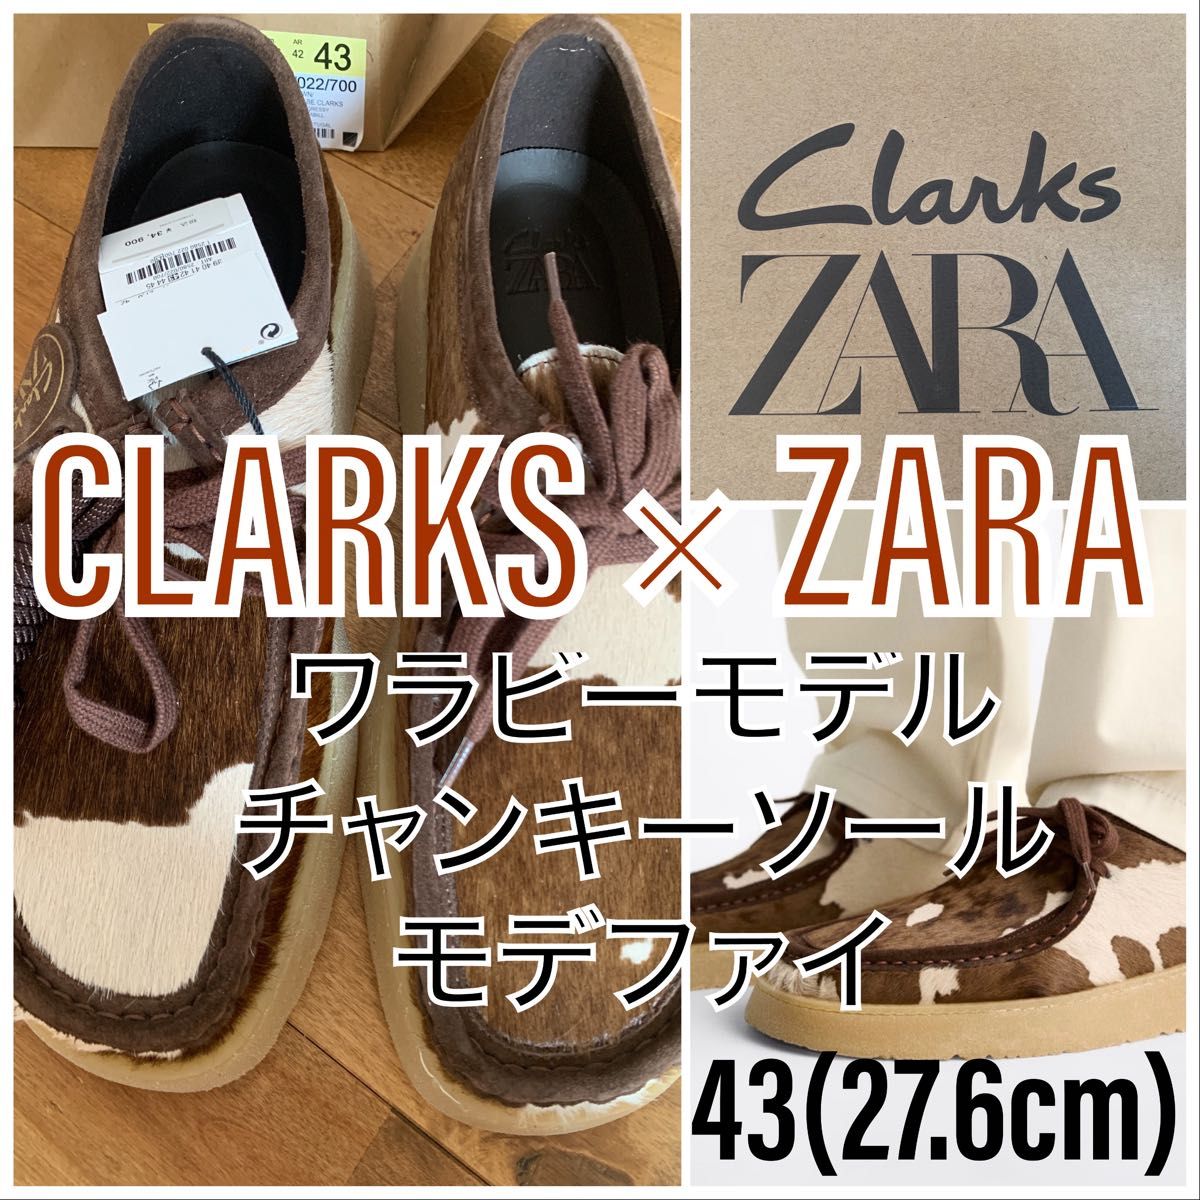 【新品未使用】CLARKS×ZARAワラビーハラコチャンキーソールモデファイ43(27.6cm)